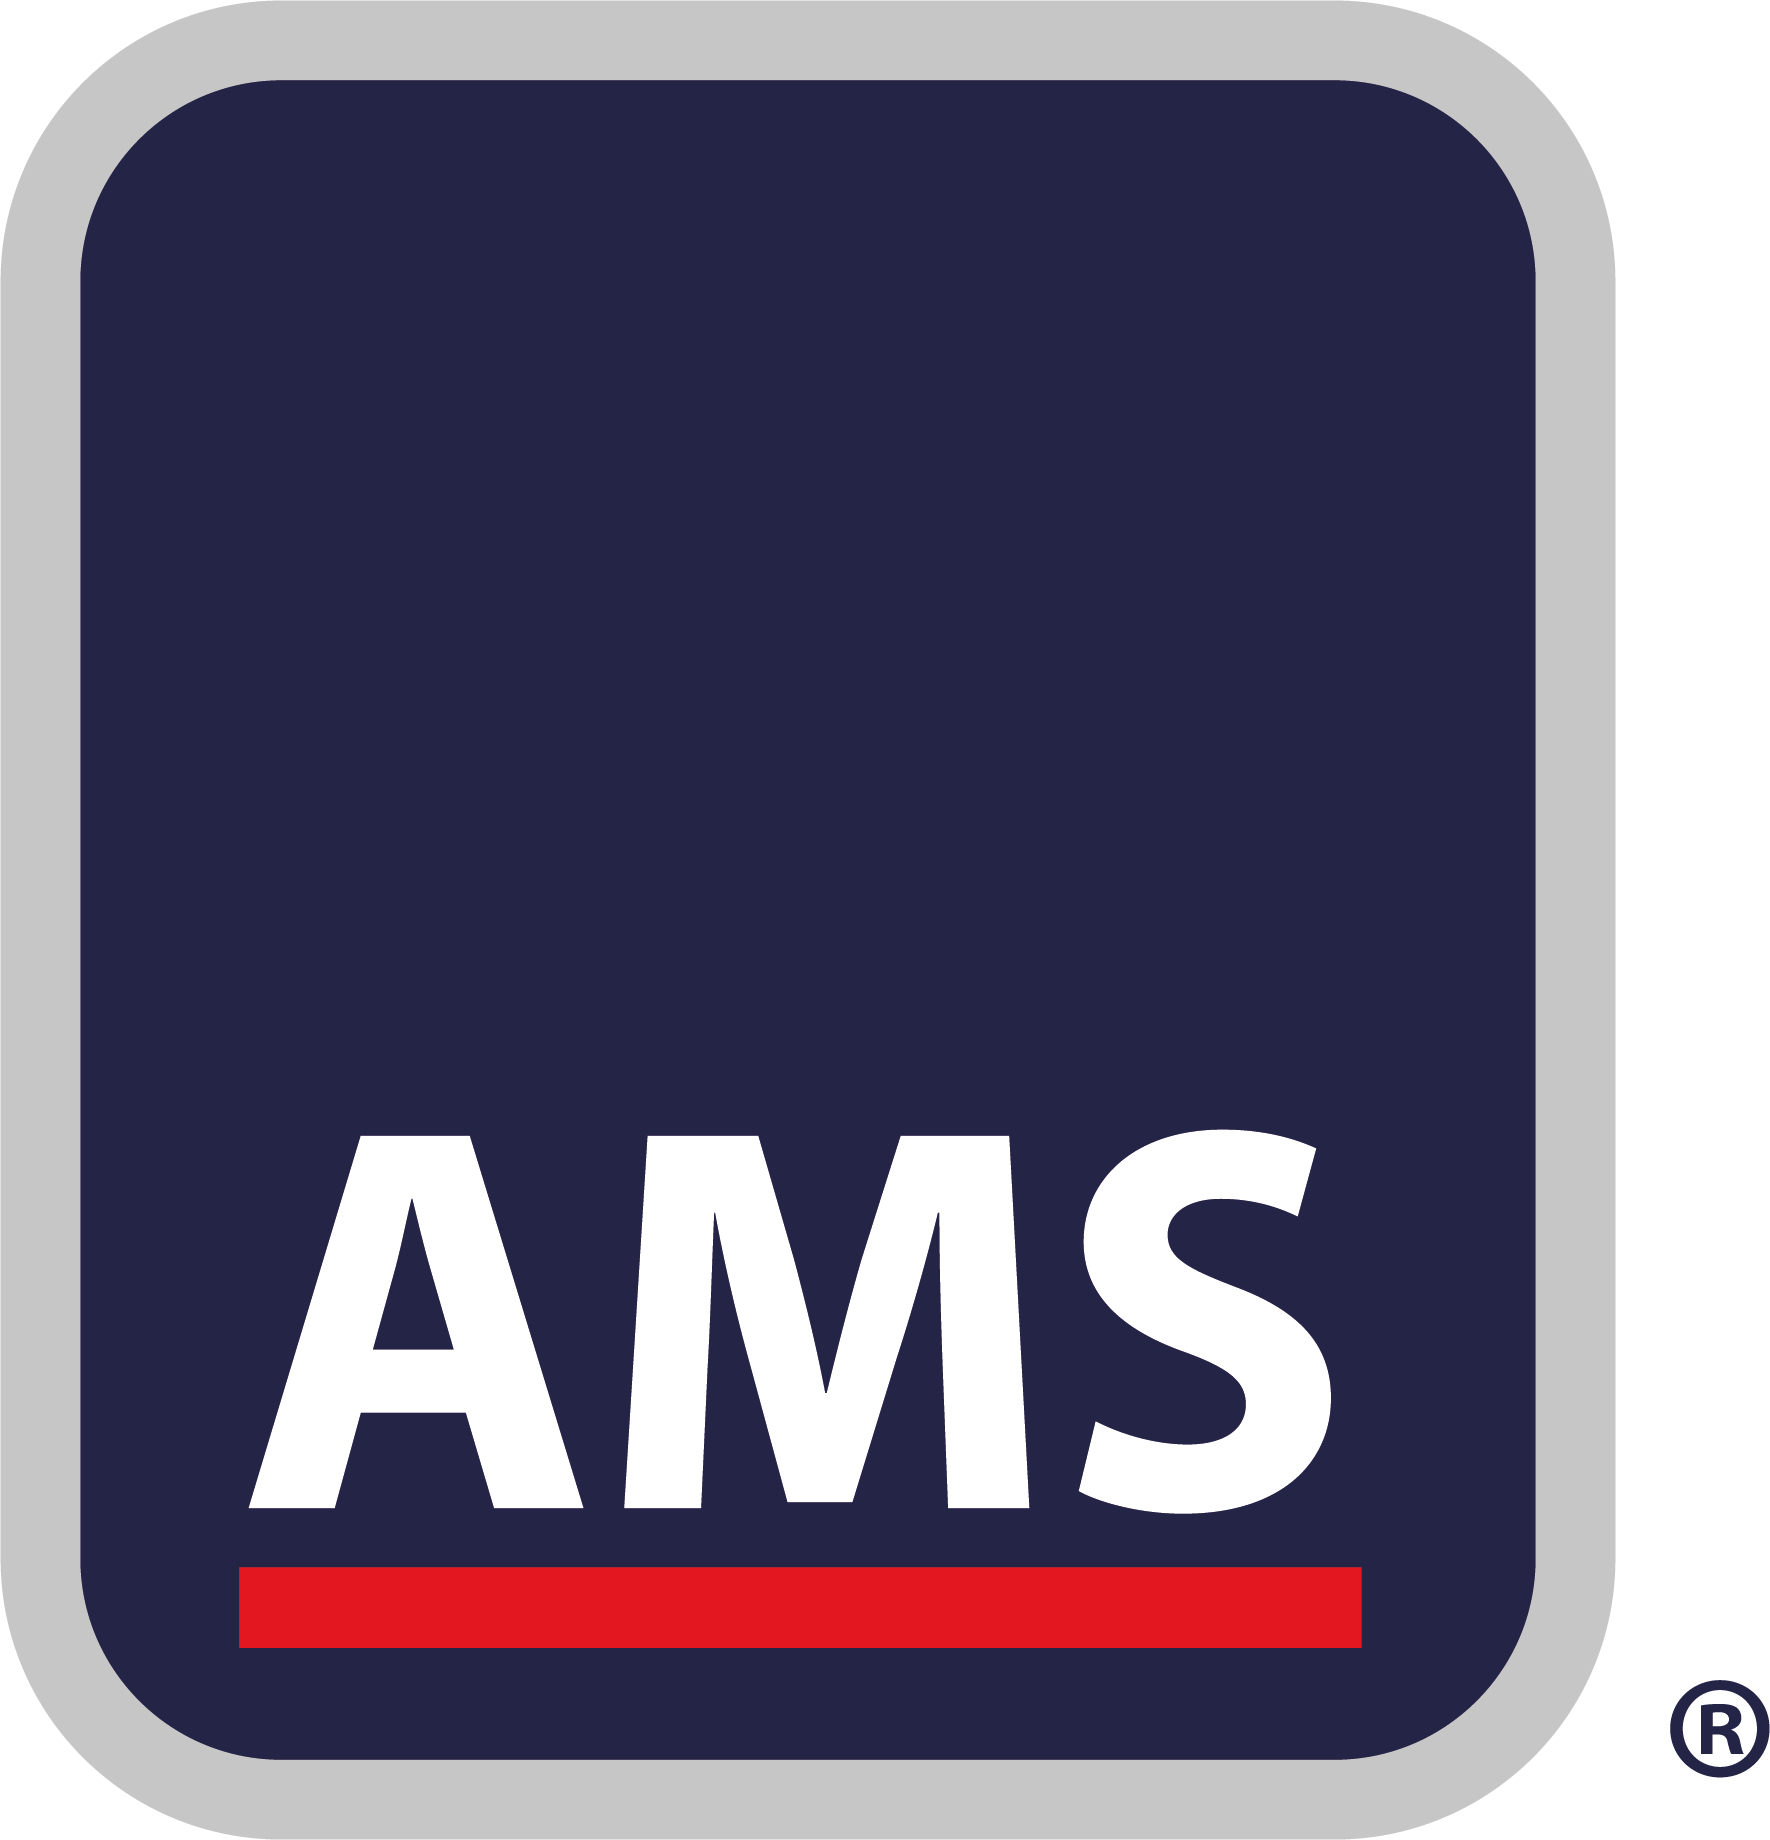 AMS Insurance Services Ltd